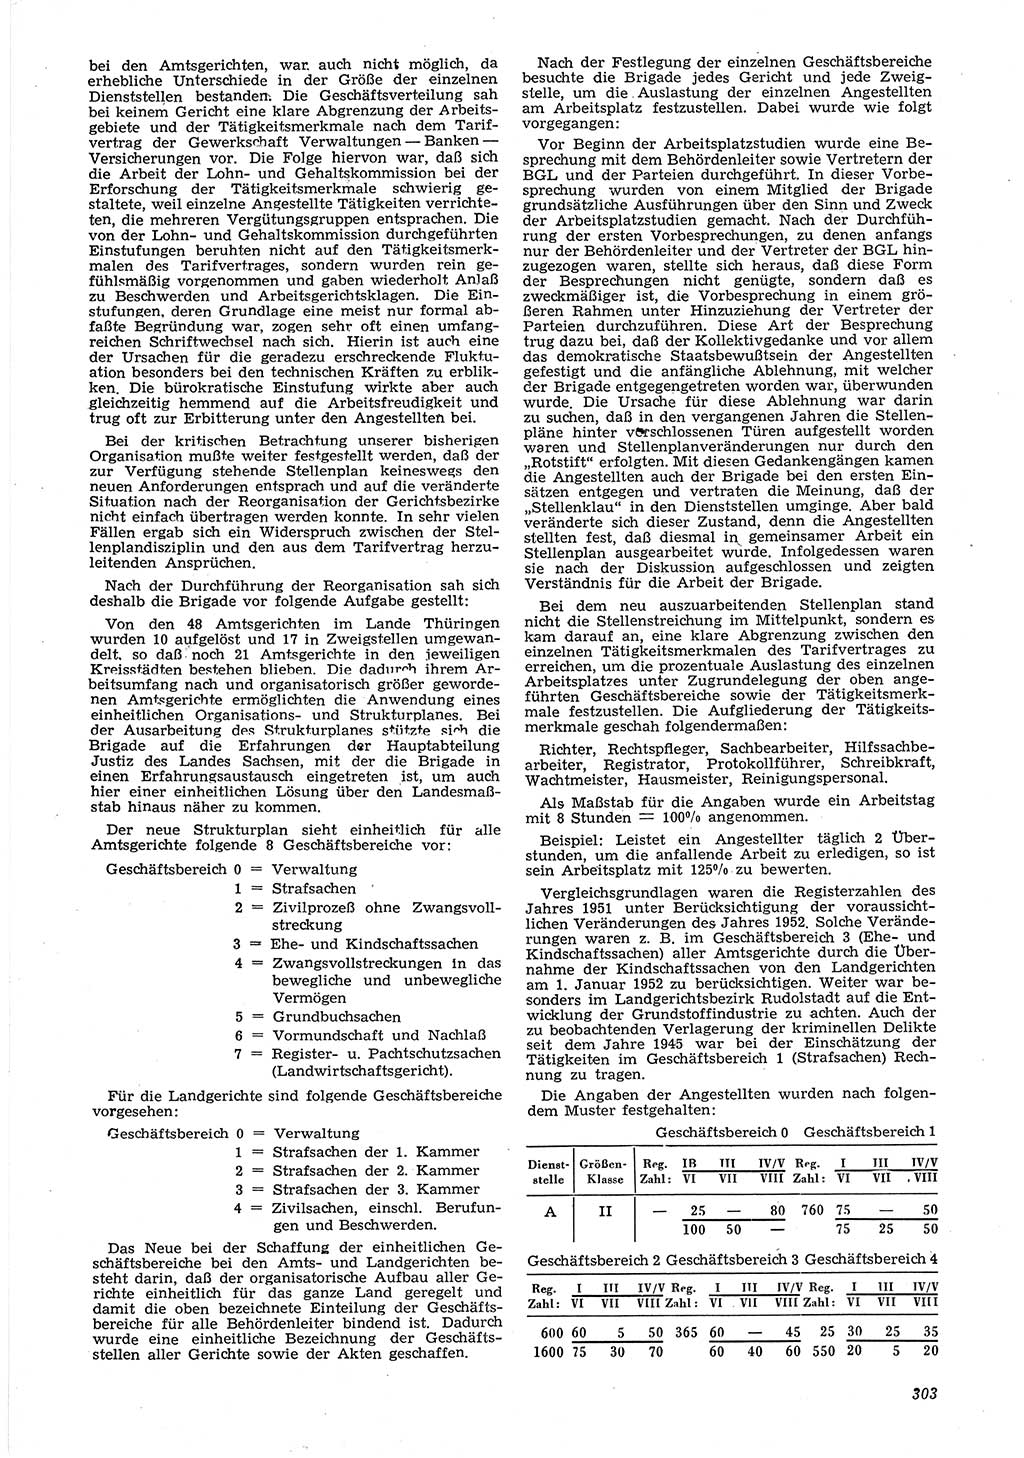 Neue Justiz (NJ), Zeitschrift für Recht und Rechtswissenschaft [Deutsche Demokratische Republik (DDR)], 6. Jahrgang 1952, Seite 303 (NJ DDR 1952, S. 303)